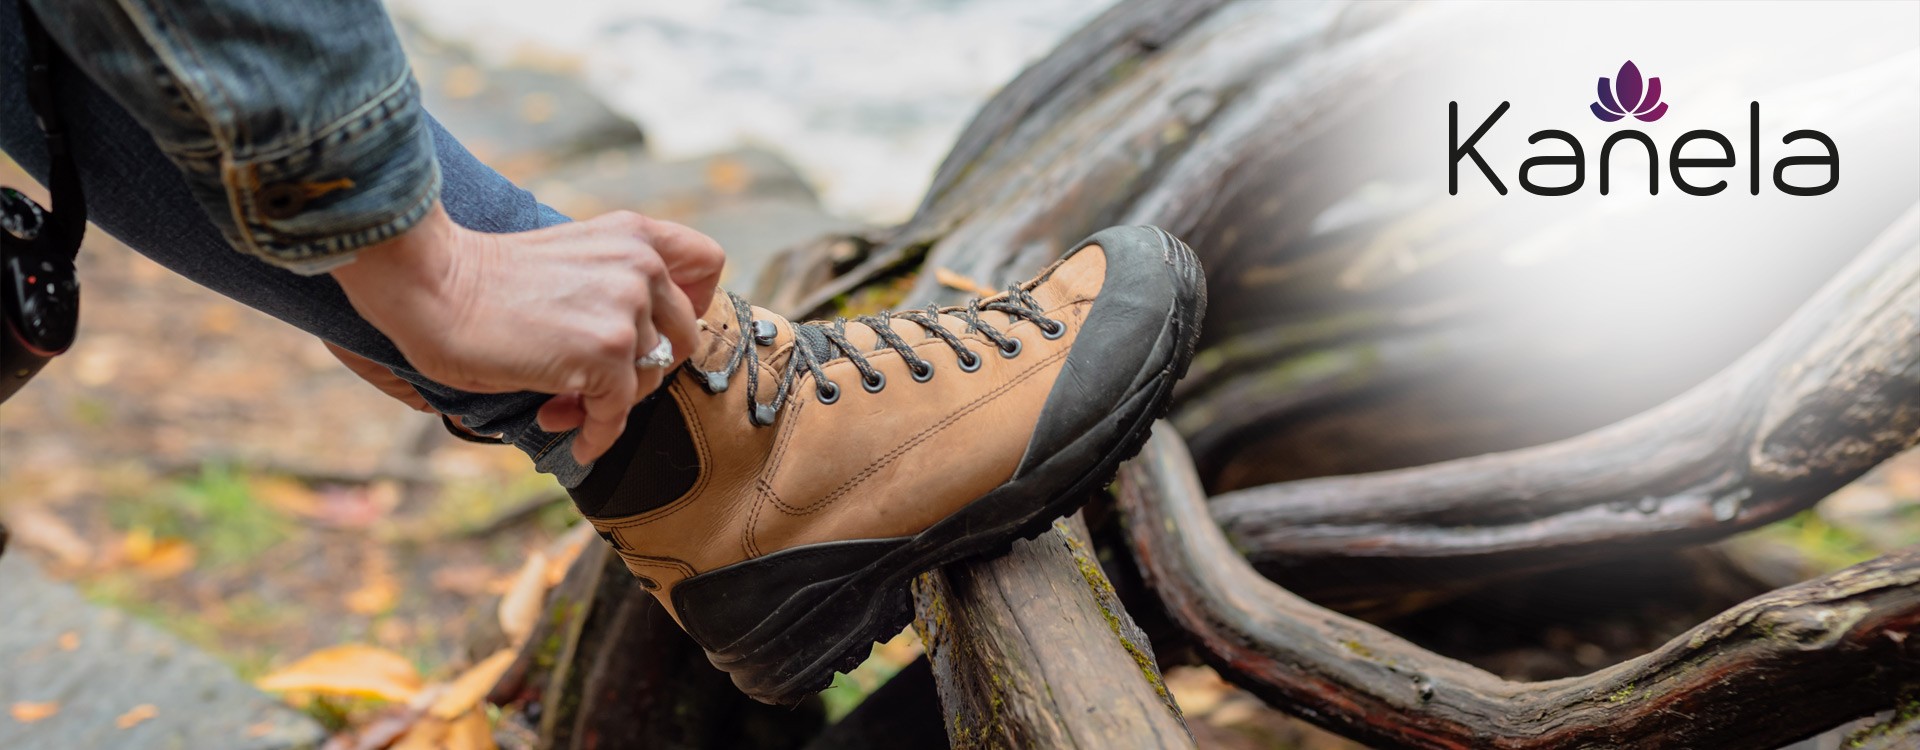 Perché le scarpe e i calzini giusti sono così importanti per i principianti durante una vacanza escursionistica